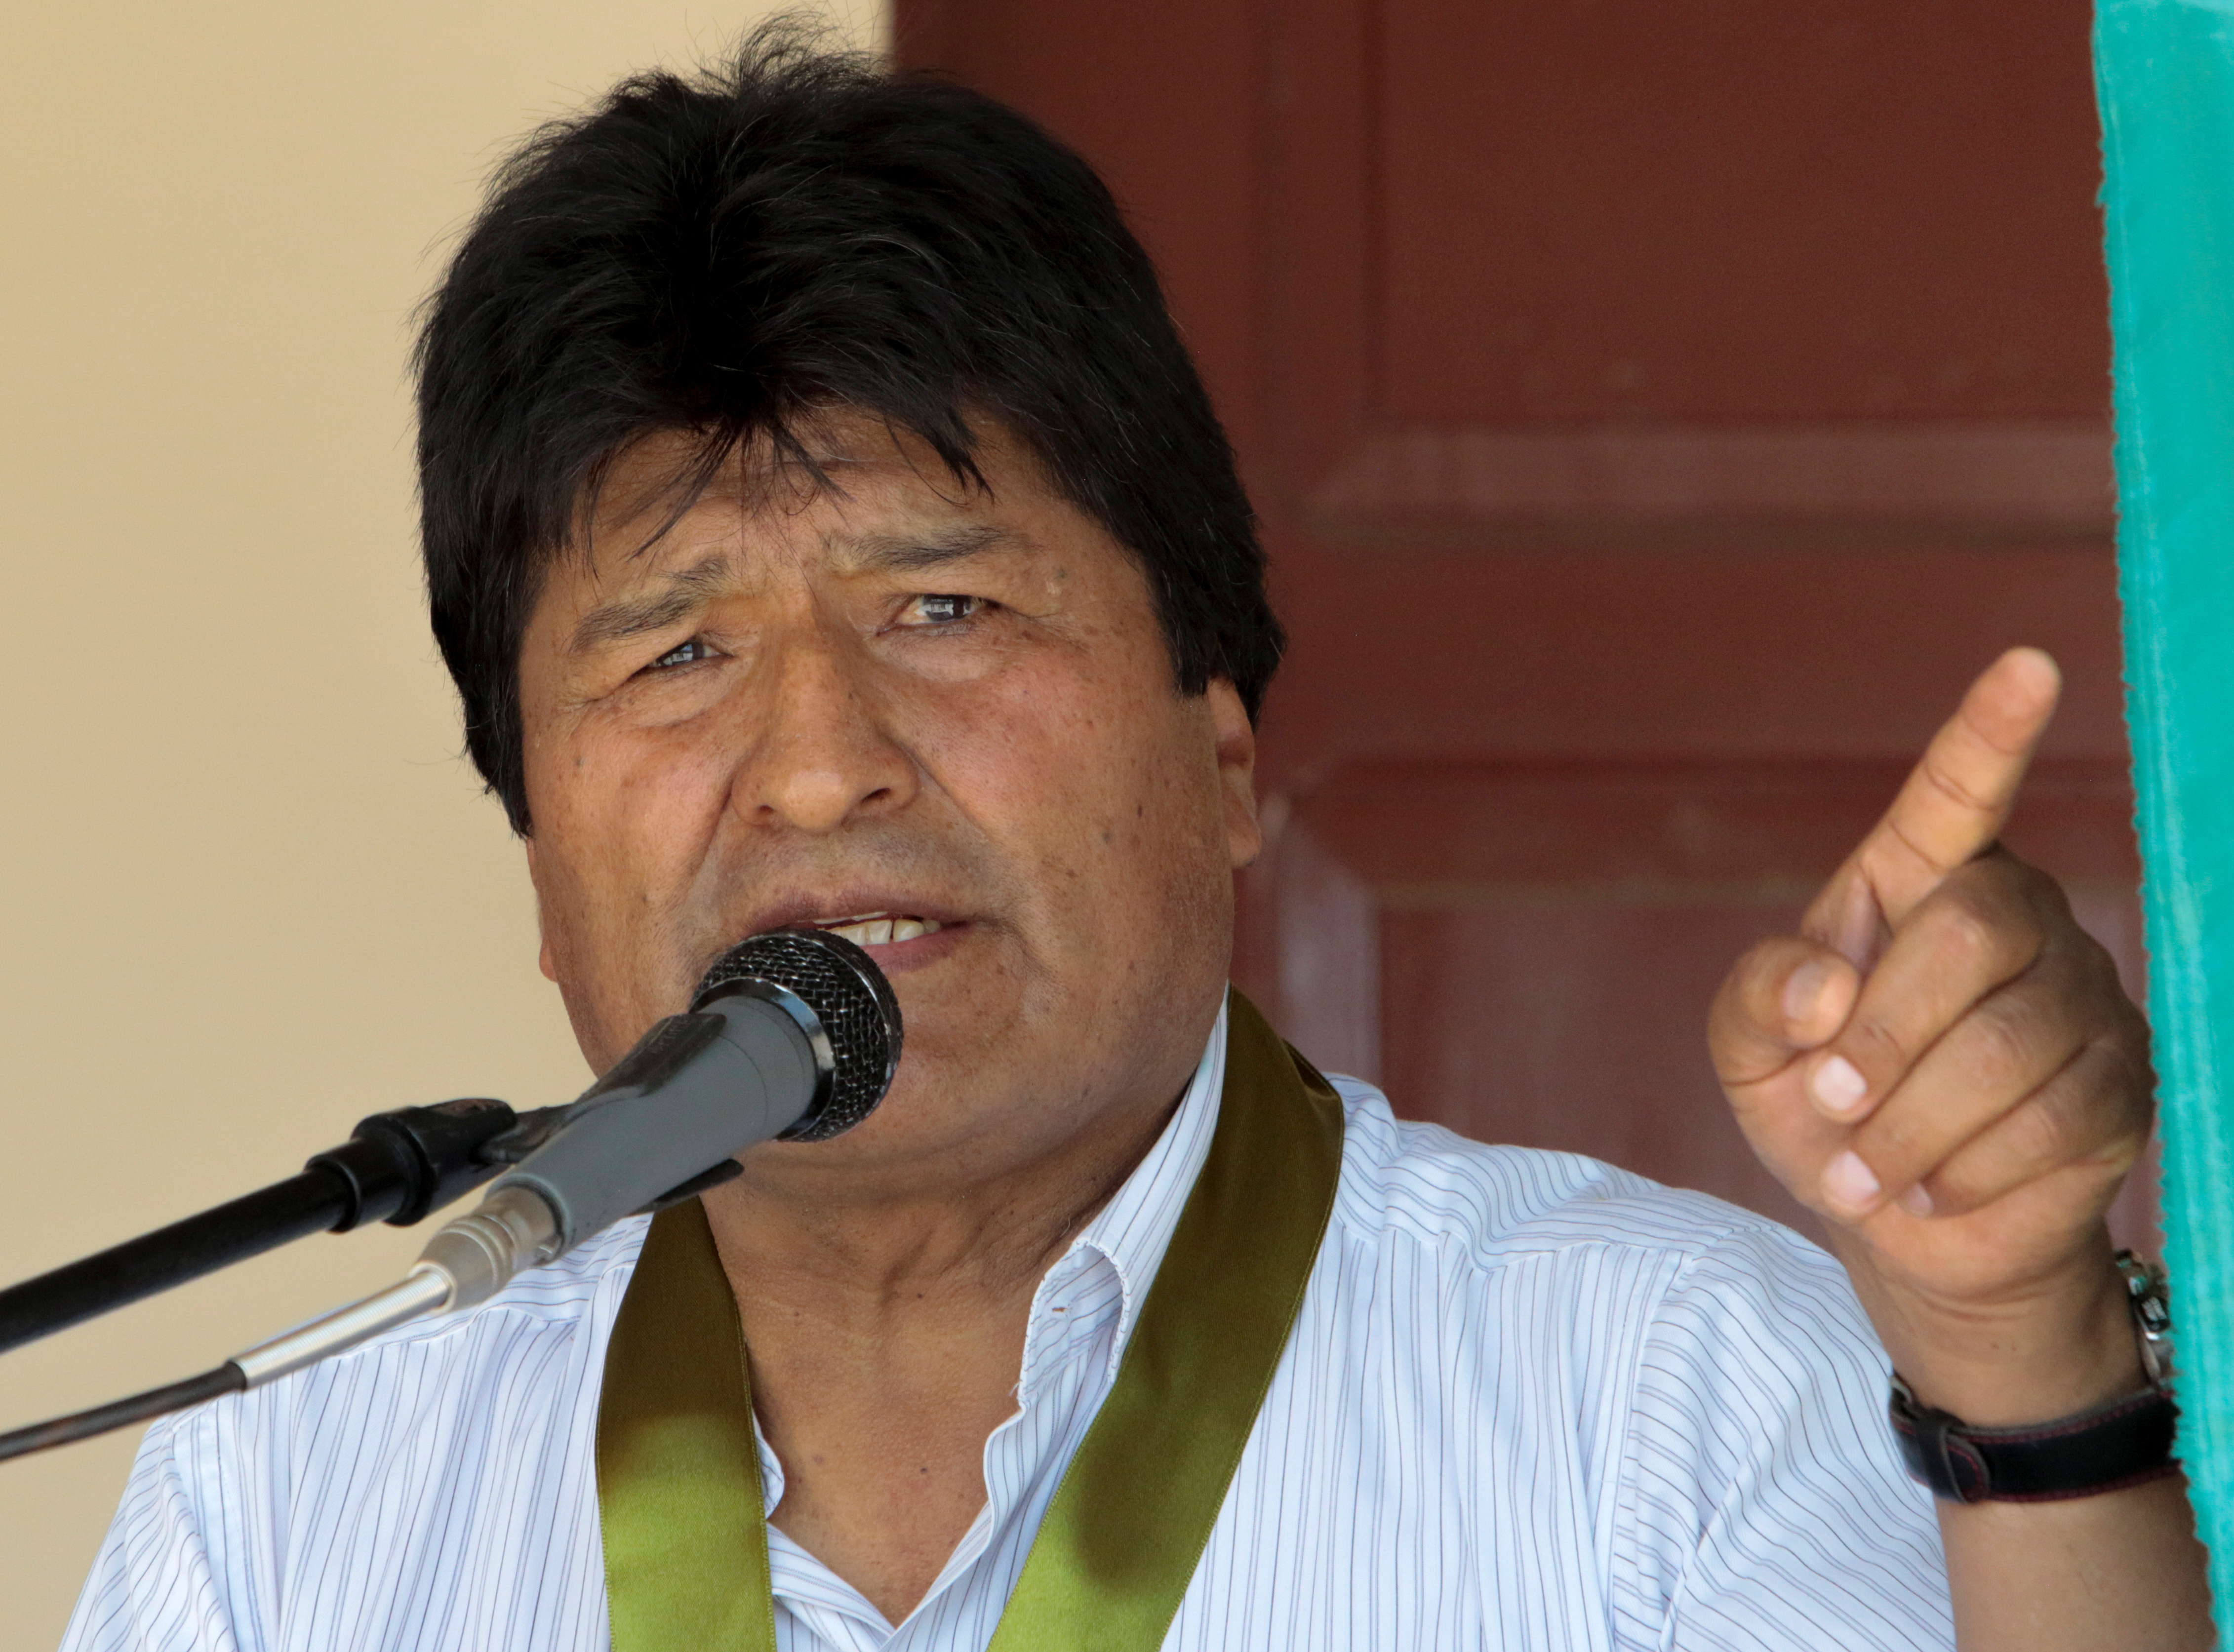 Βολιβία: Παραιτήθηκε ο Εβο Μοράλες